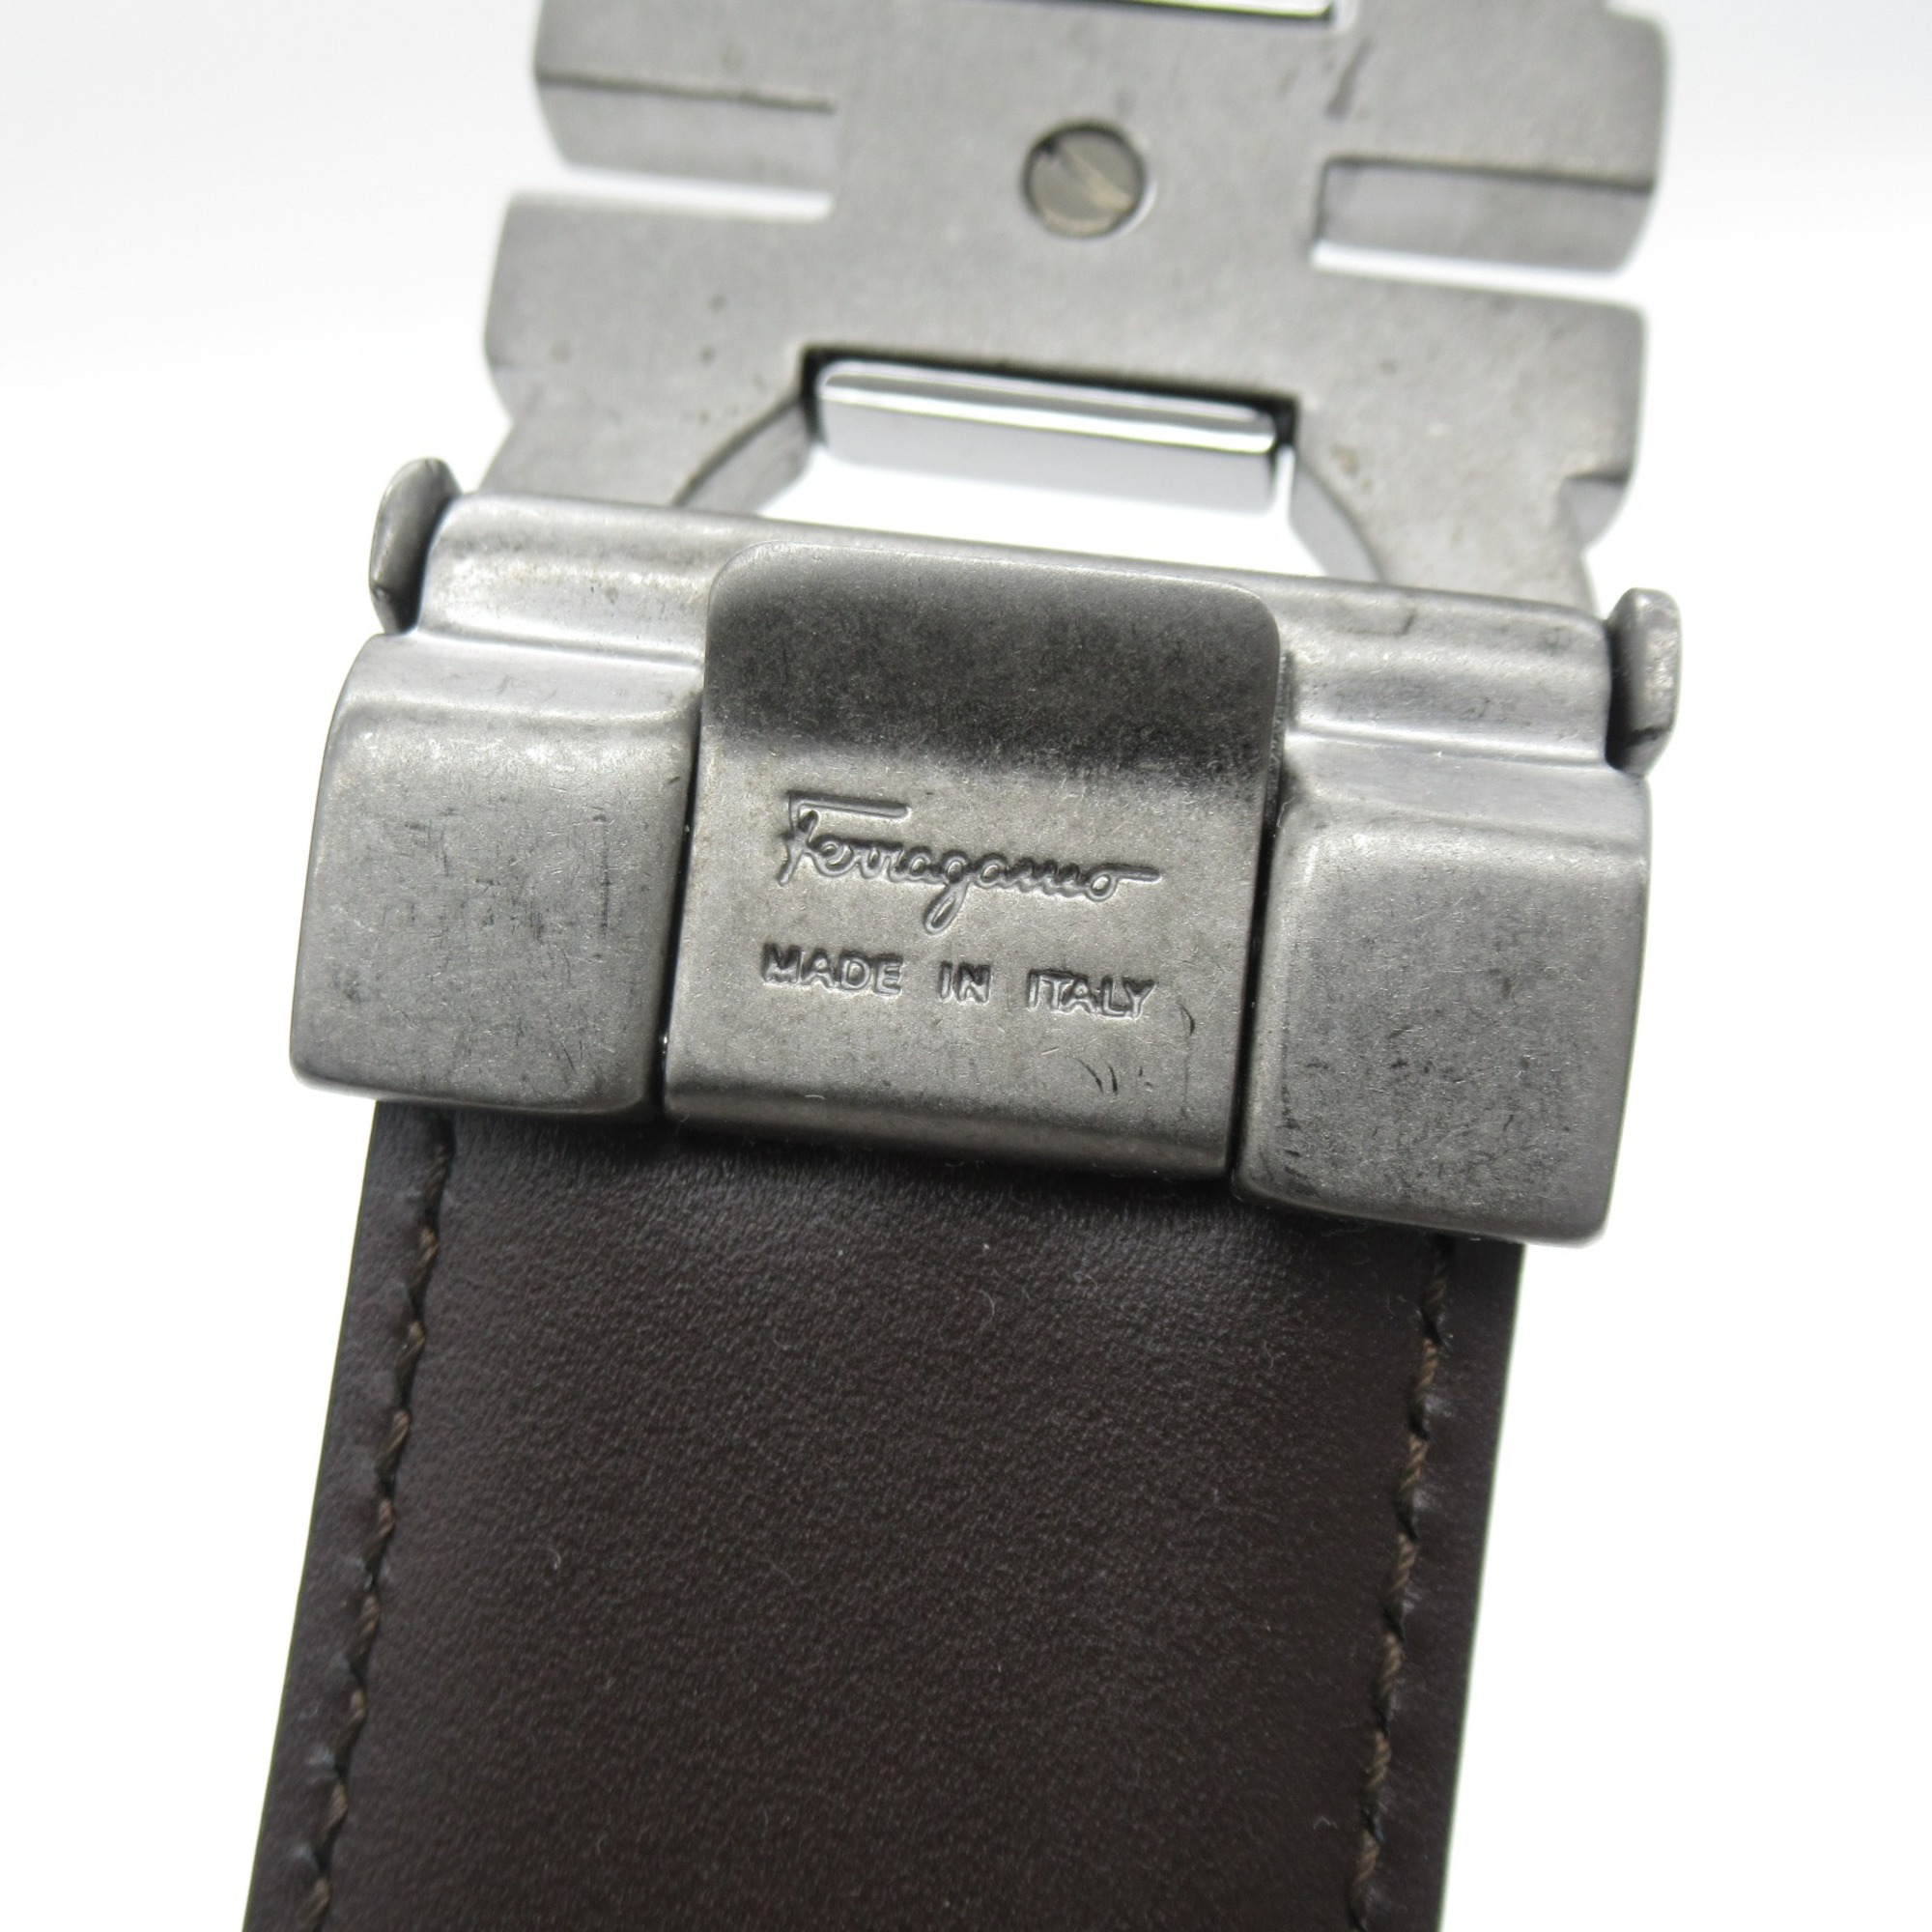 Salvatore Ferragamo belt Black Nero leather 6.7953567766411E+14